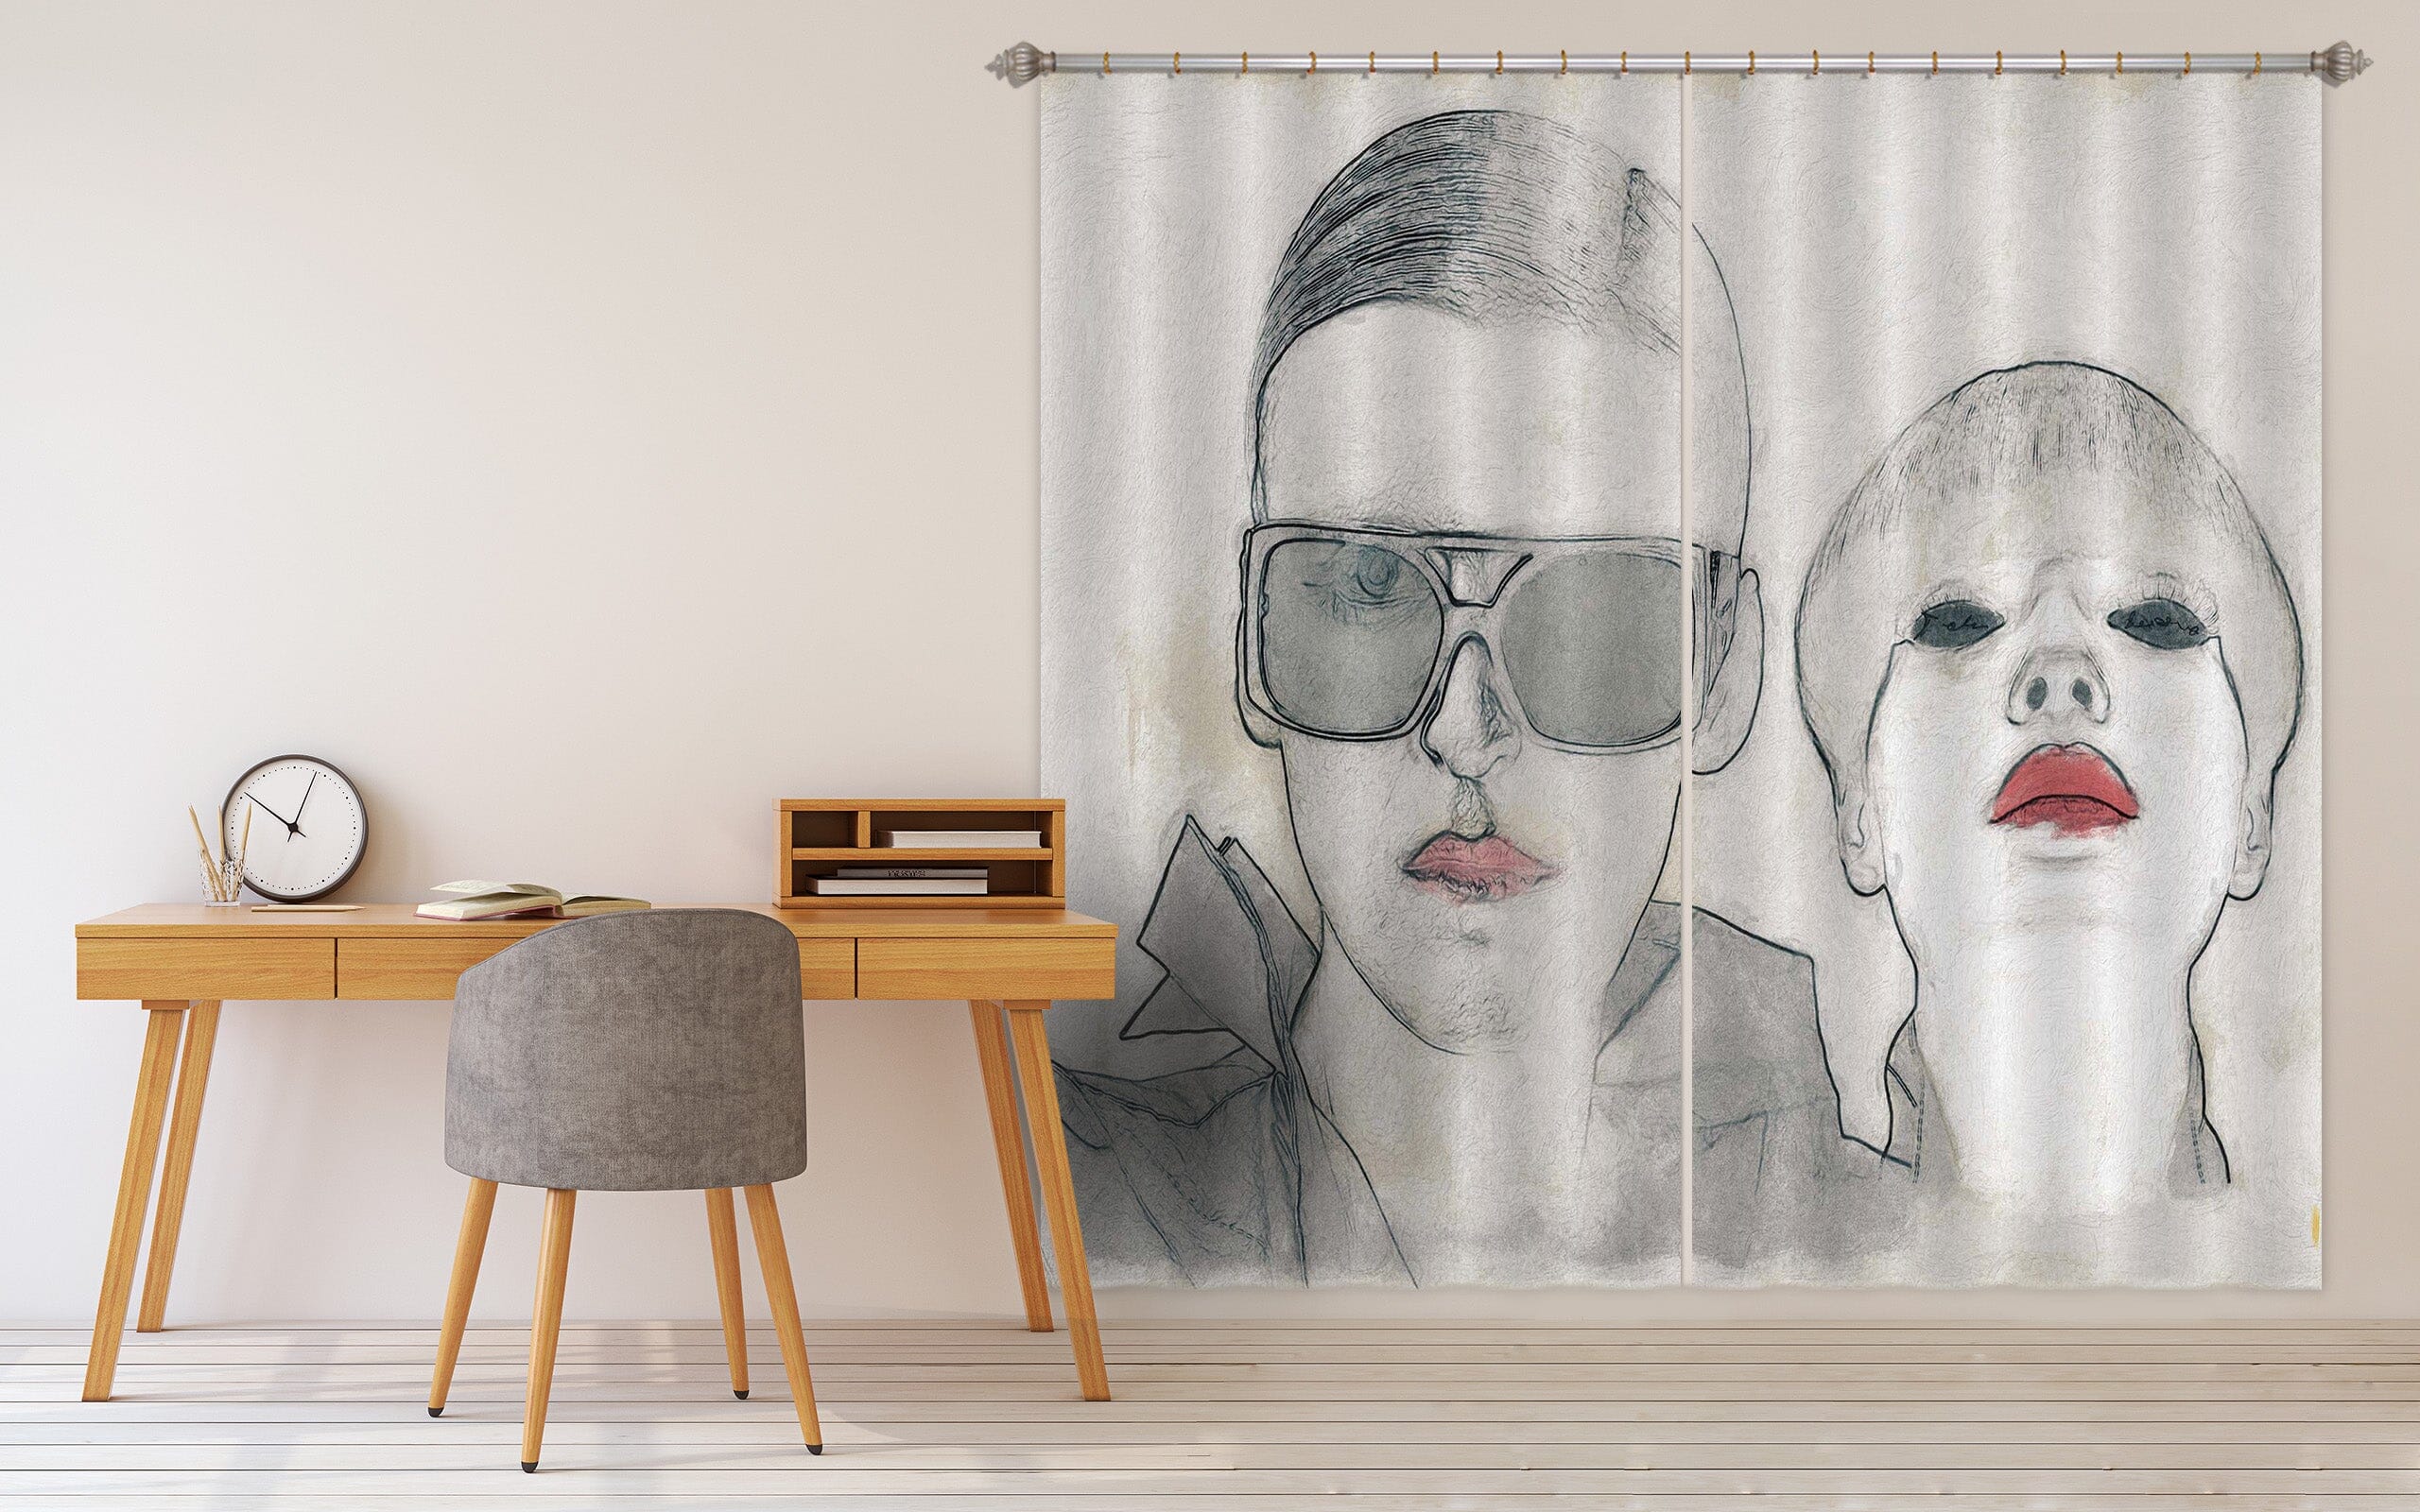 3D Fashion 048 Marco Cavazzana Curtain Curtains Drapes Curtains AJ Creativity Home 